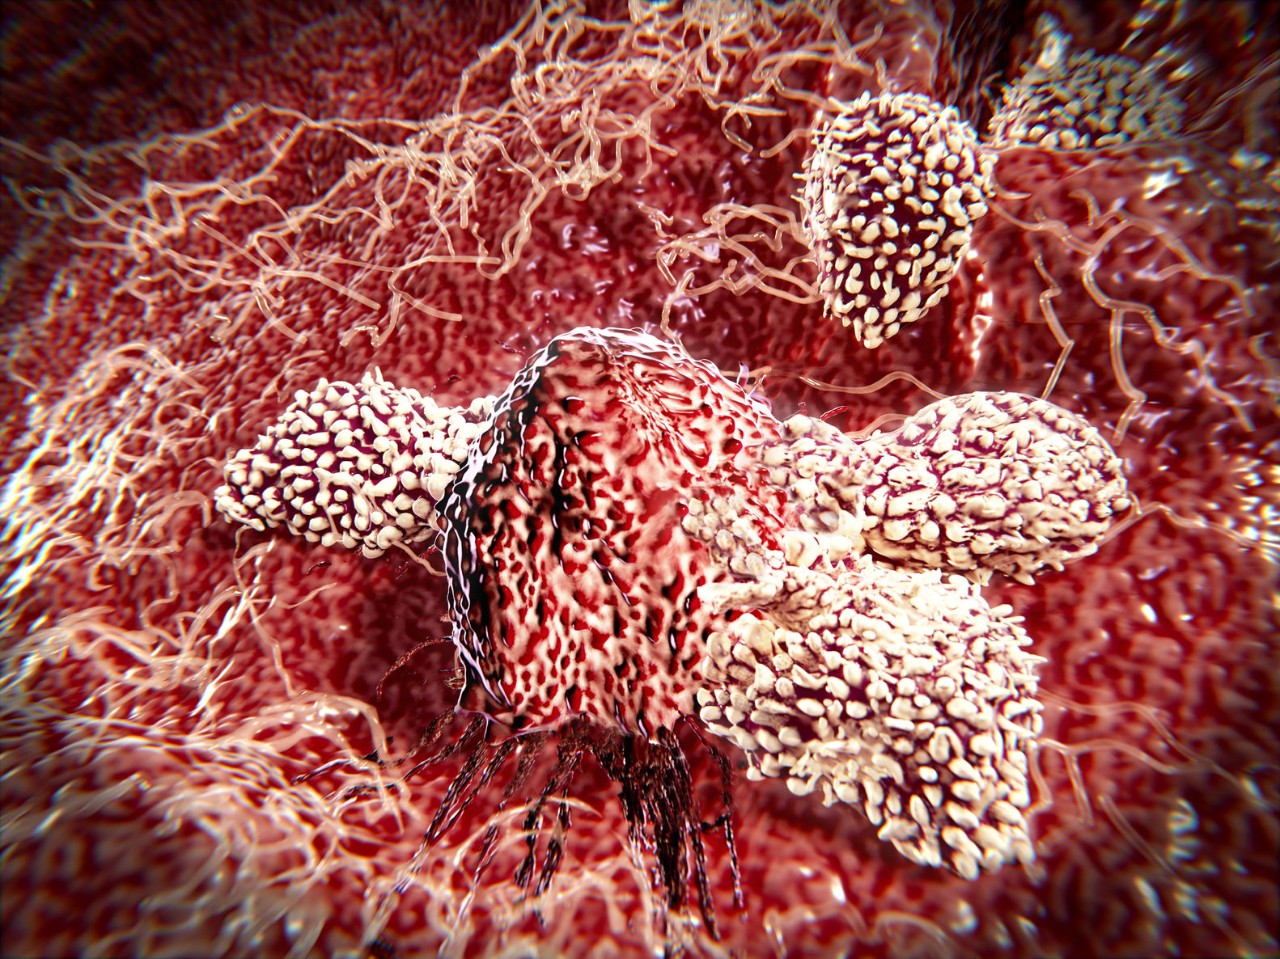 自然杀伤(NK)细胞作为“杀手”首次获得冠军近40年前当研究者观察到这些淋巴细胞的快速免疫反应破坏宿主细胞或肿瘤细胞感染病毒。似乎NK细胞可以附加自发事先激活。